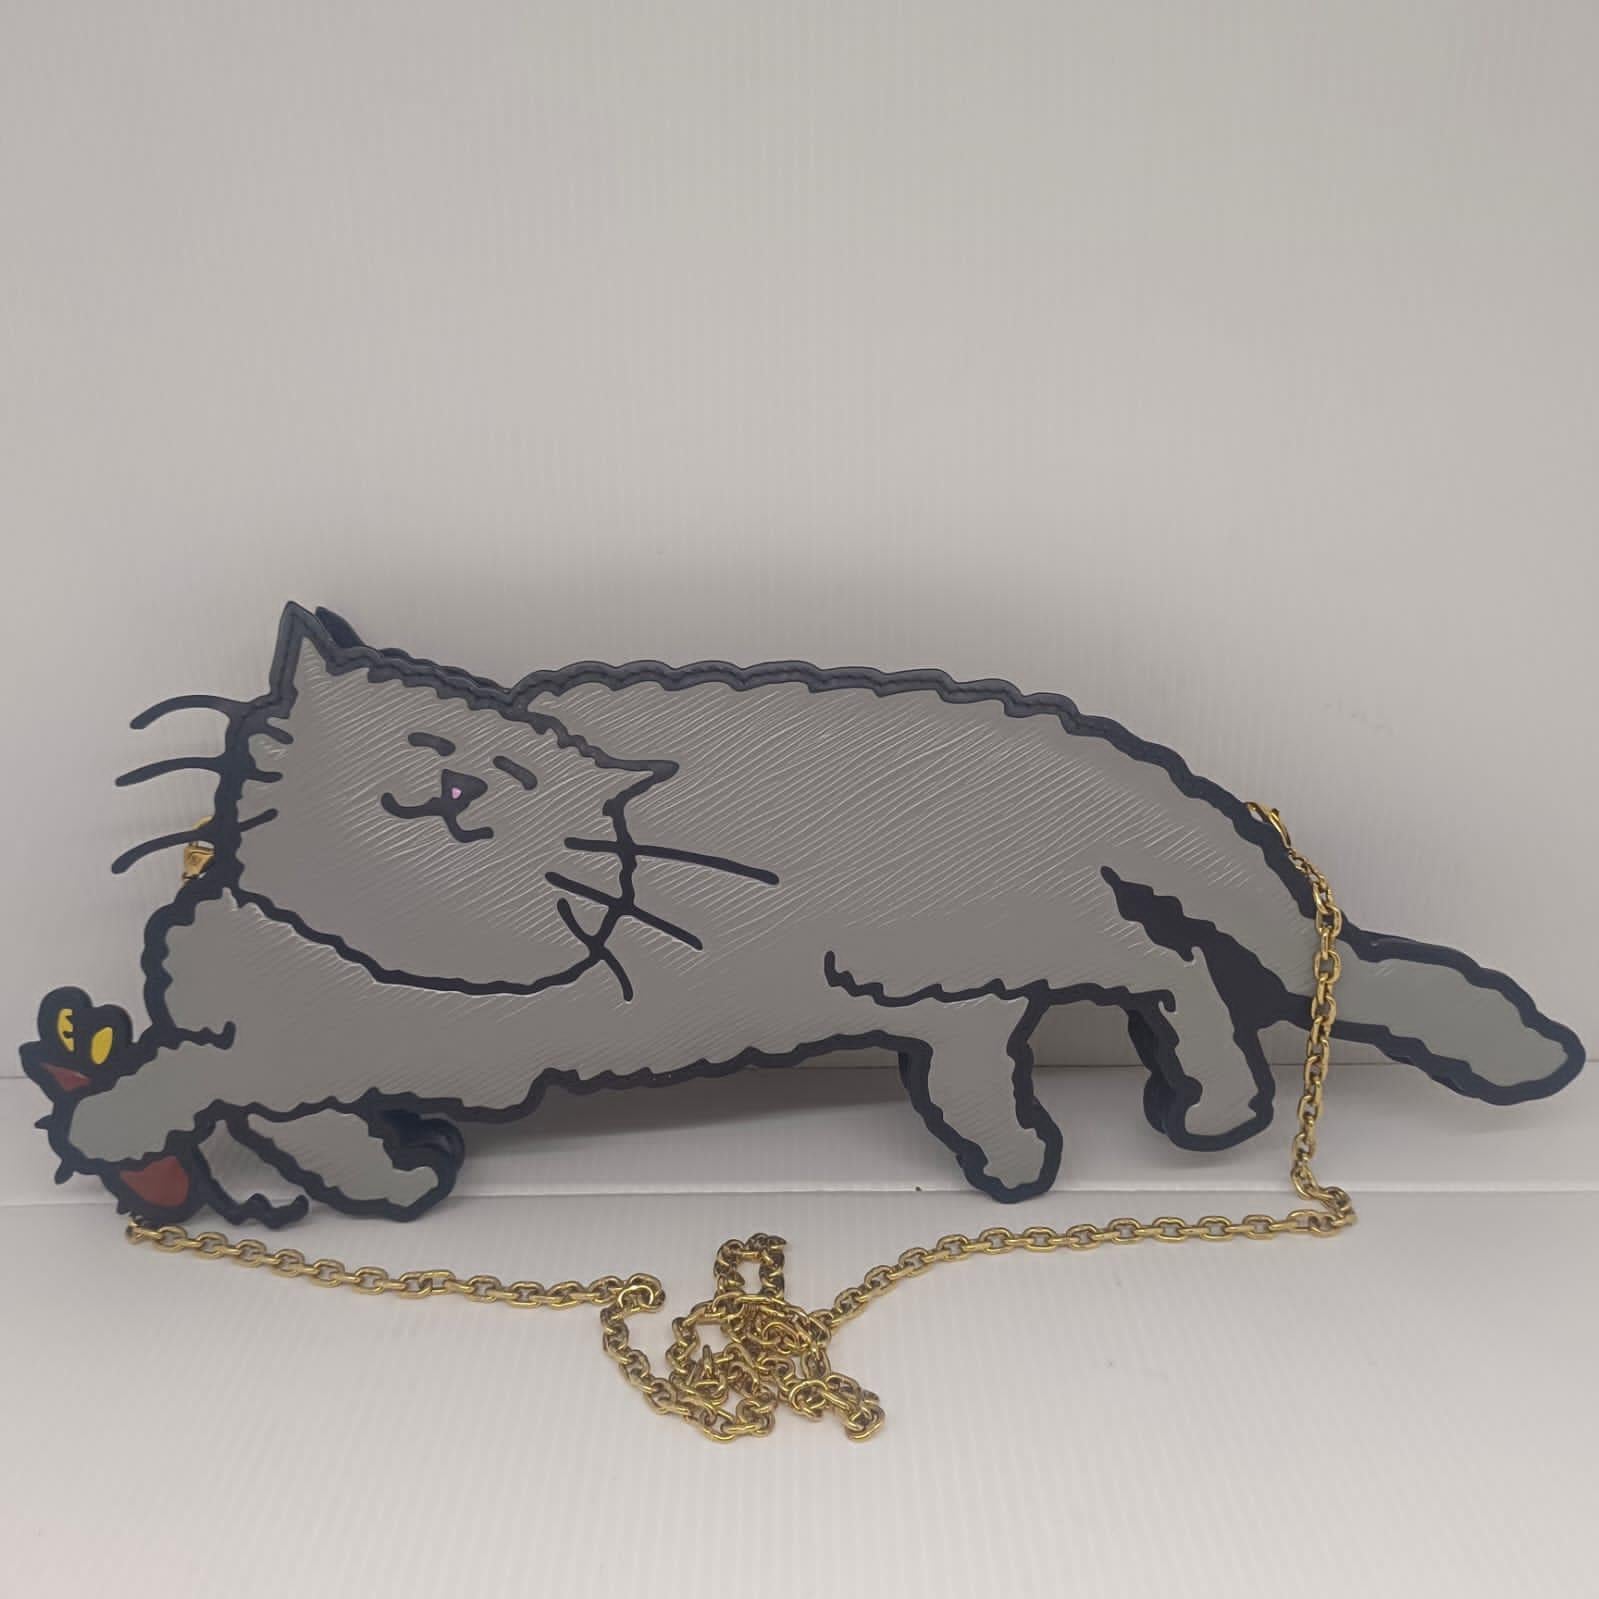 Louis Vuitton x Grace Coddington 2018 Epi Cat Chain Clutch For Sale 7